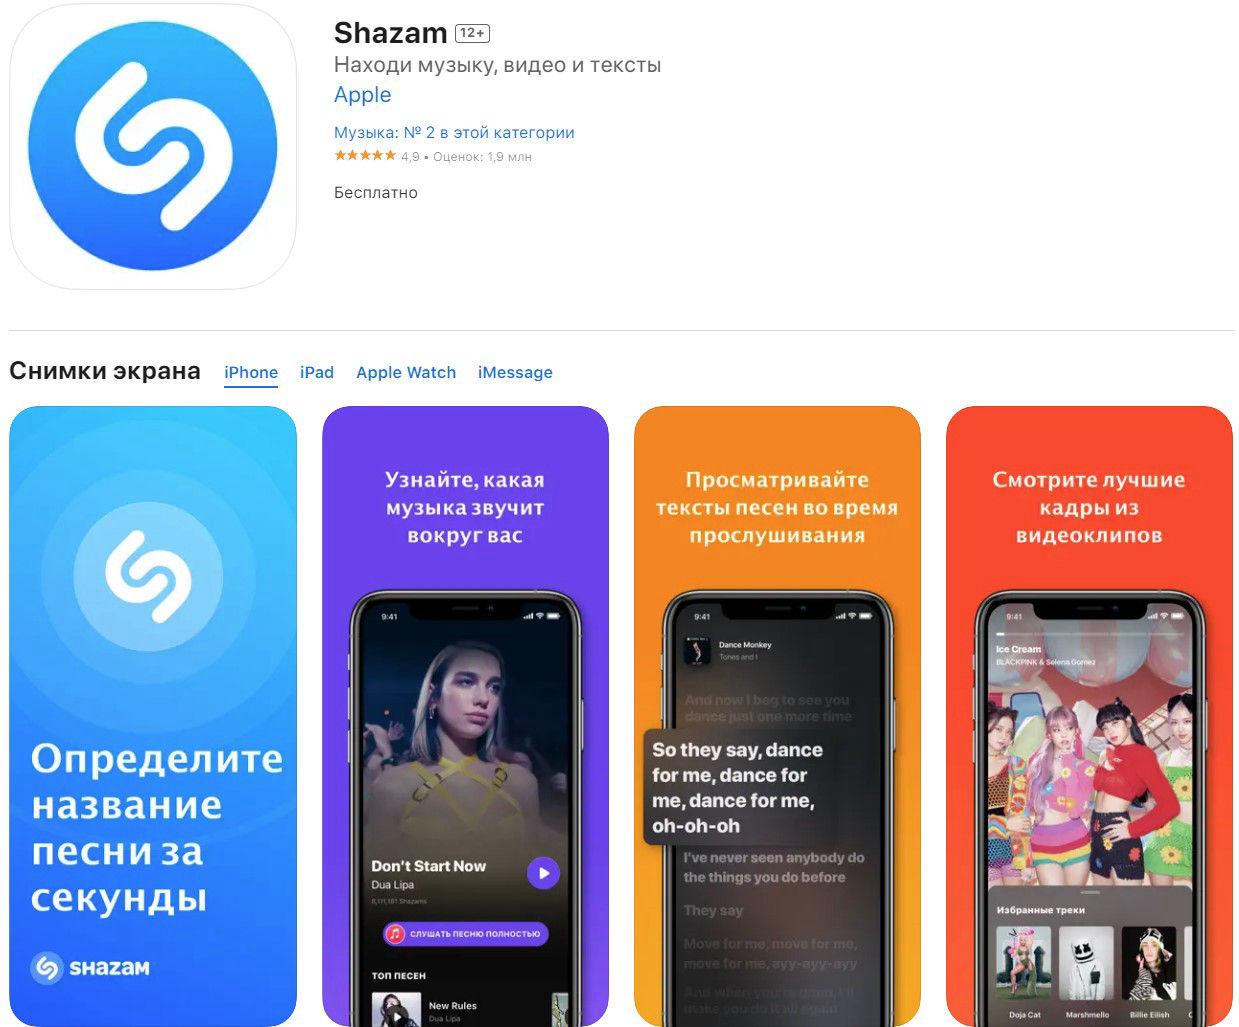 Shazam — самый популярный сервис по распознаванию музыки.